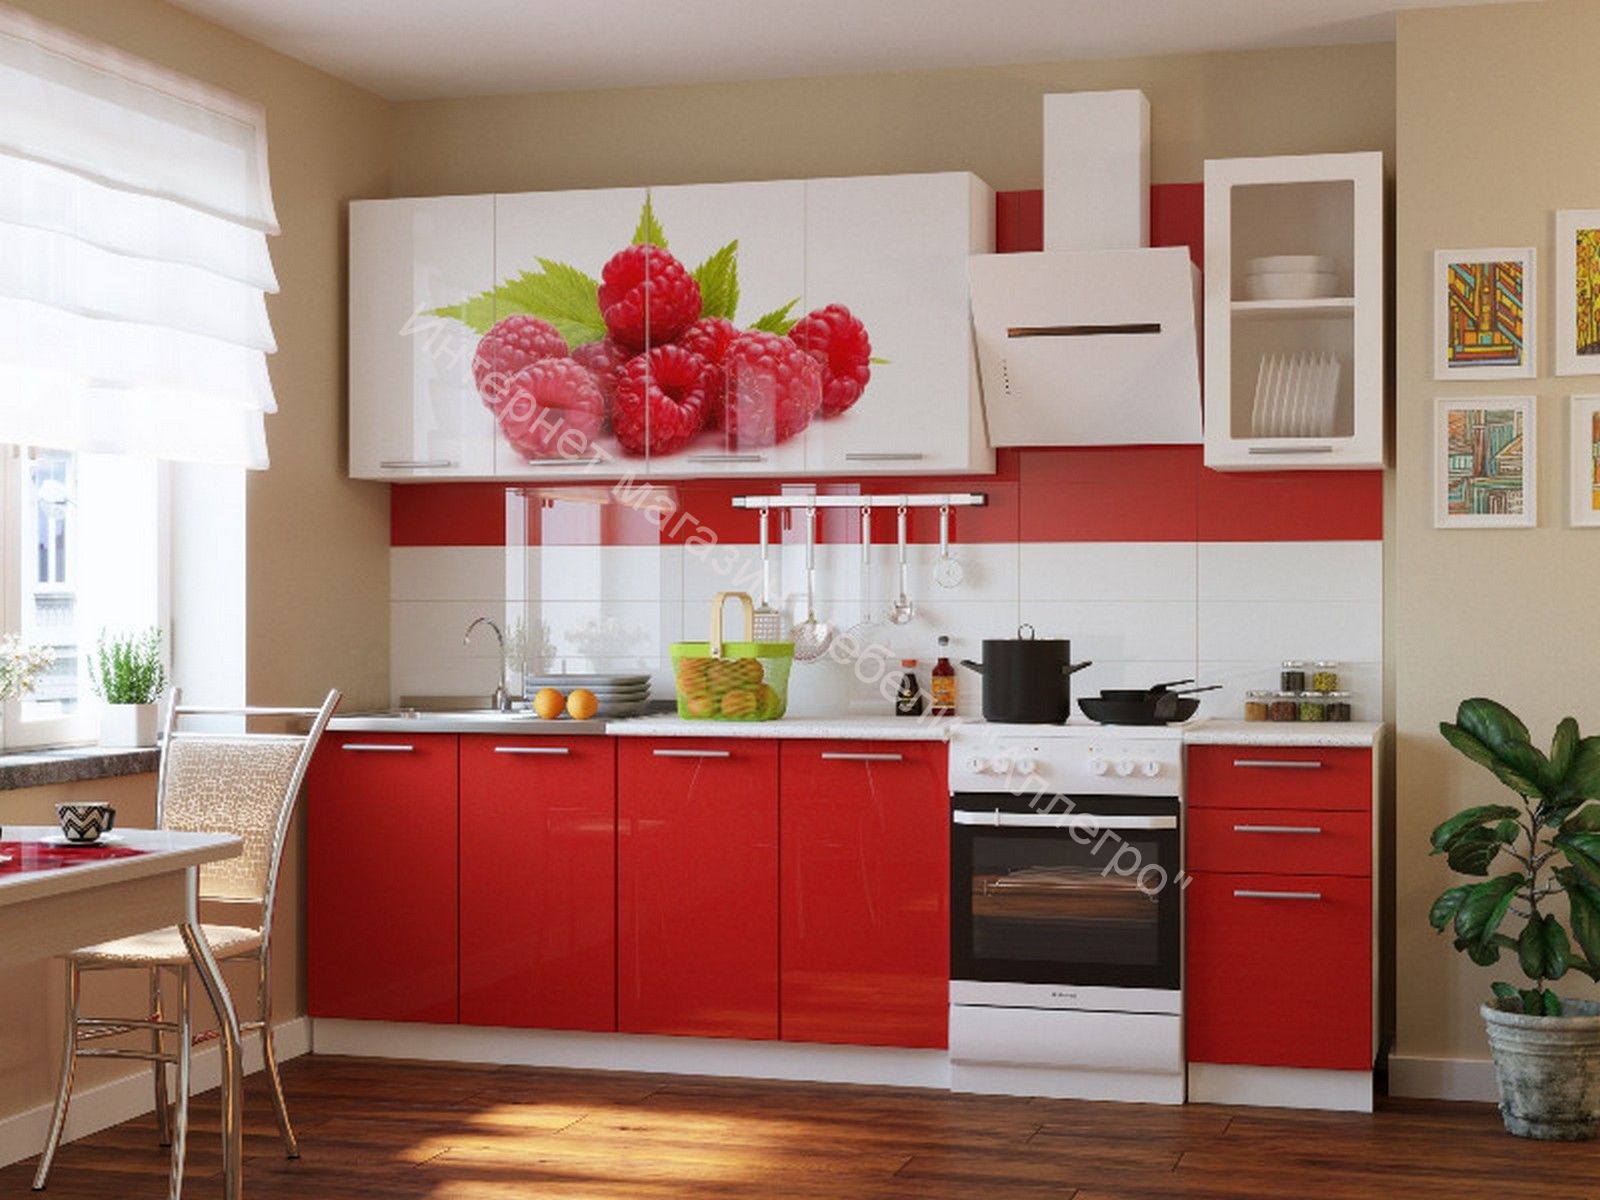 Купить кухню в спб от производителя распродажа. Кухня "красные маки" 1,6м. Кухня в Красном цвете. Красивый кухонный гарнитур.